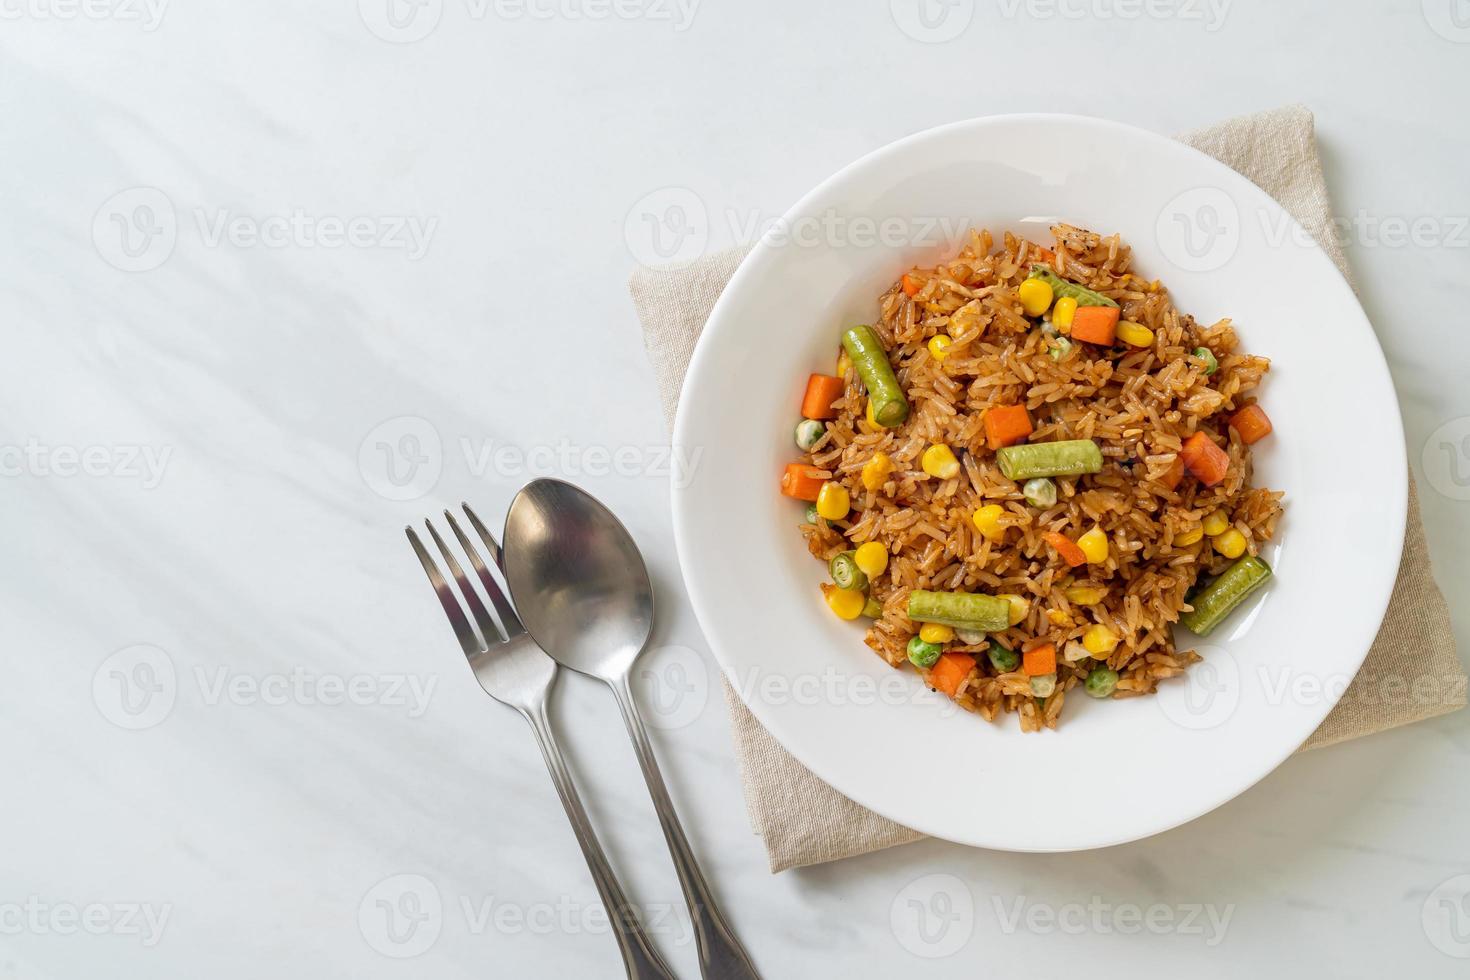 arroz frito com ervilhas, cenoura e milho - estilo de comida vegetariana e saudável foto